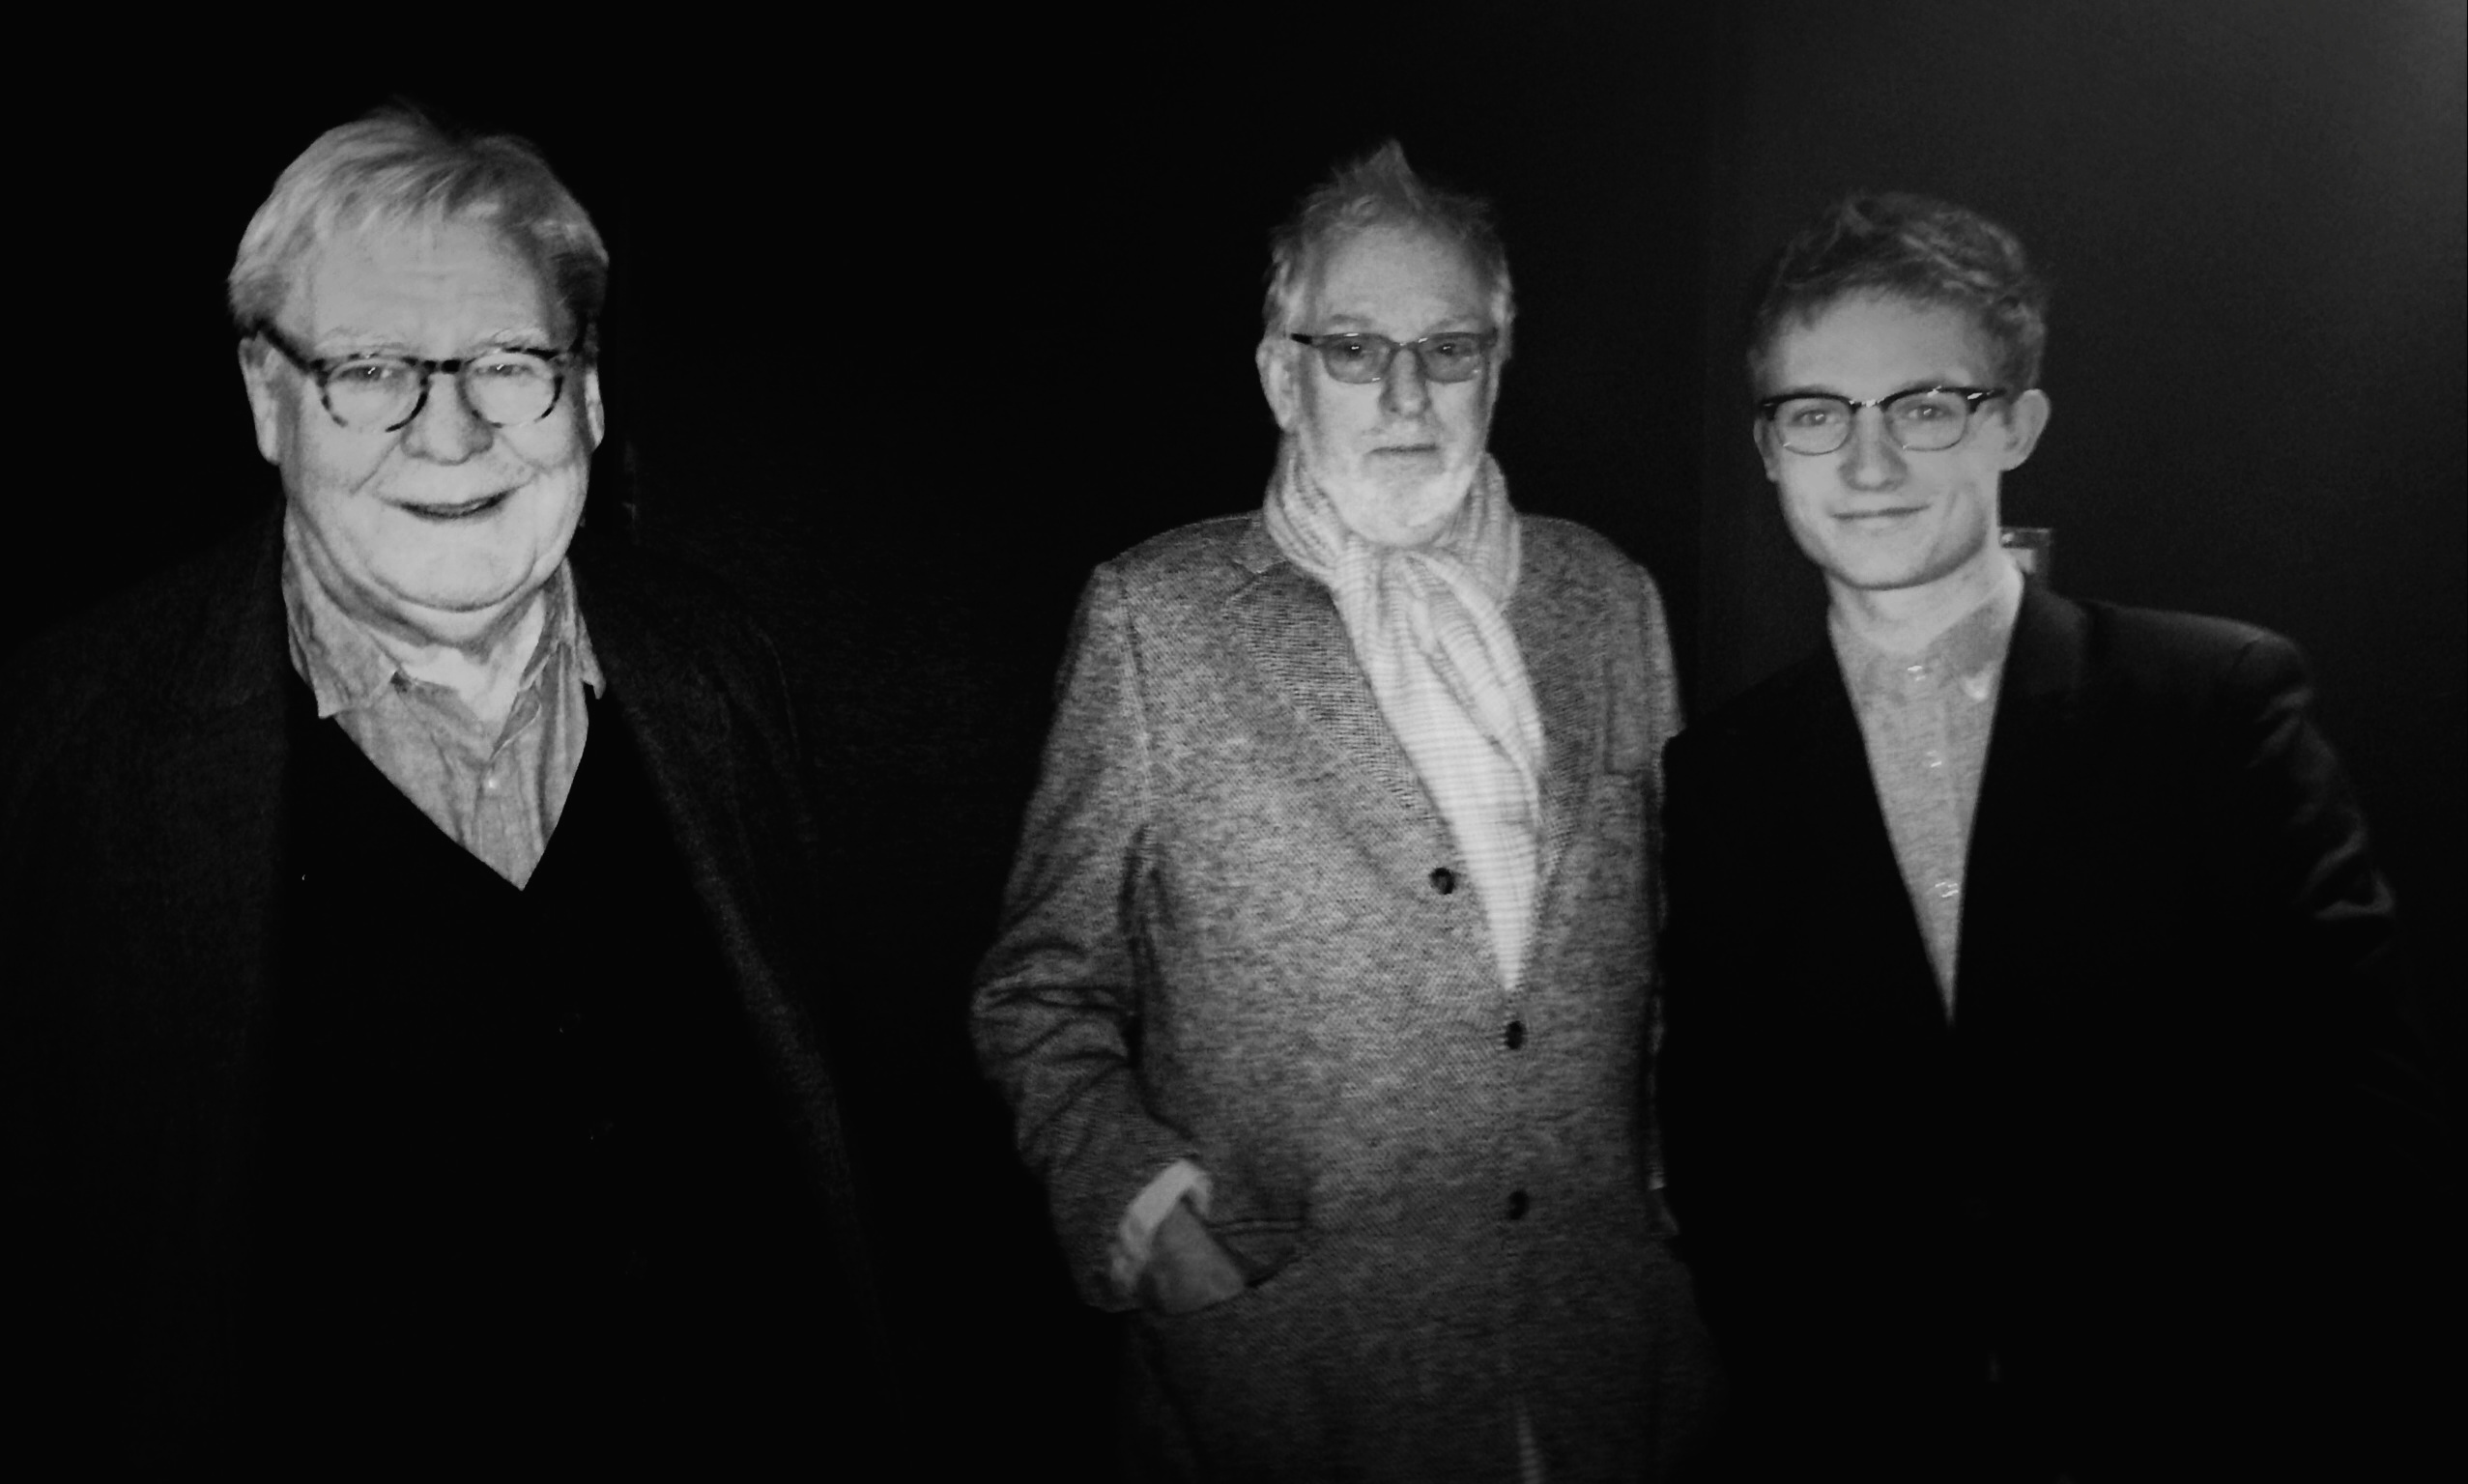 Hugh Hudson (en el centro en la foto) director de Carros de Fuego por cuya banda sonora Vangelis obtuvo su primer premio Oscar en 1982